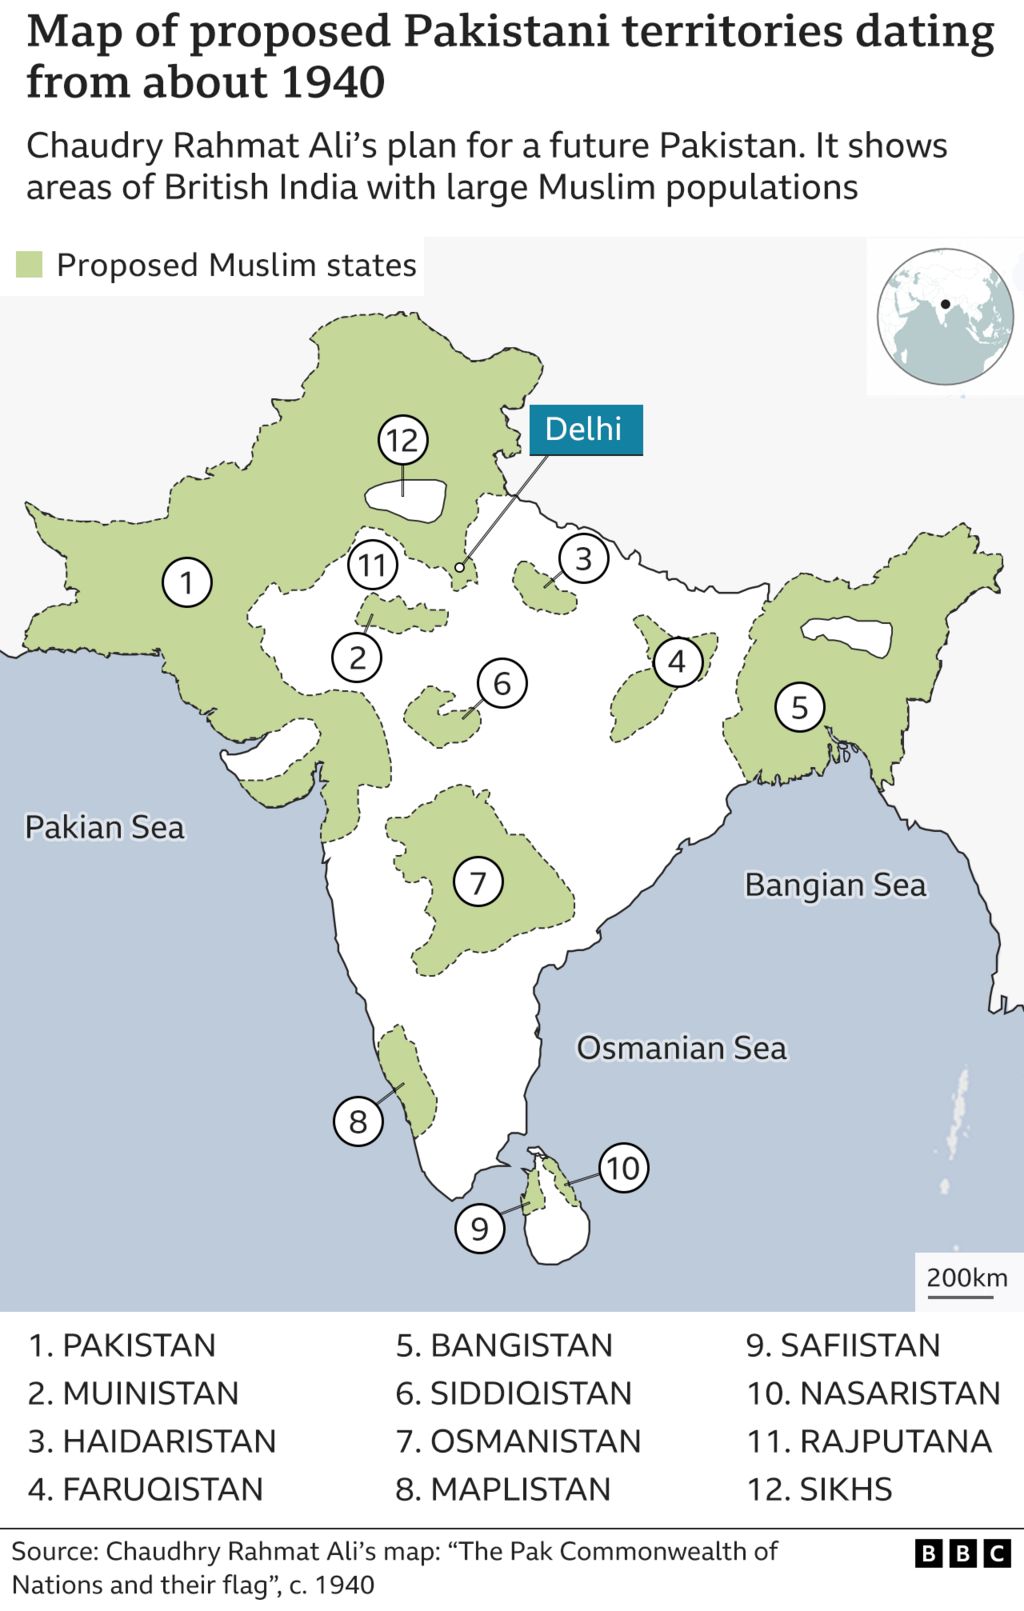 Карта примерно 1940 года, составленная Чаудри Рахматом Али, на которой показаны возможные территории для Пакистана, с территориями на северо-западе и северо-востоке Британской Индии, а также с анклавами по всему центру и югу страны.